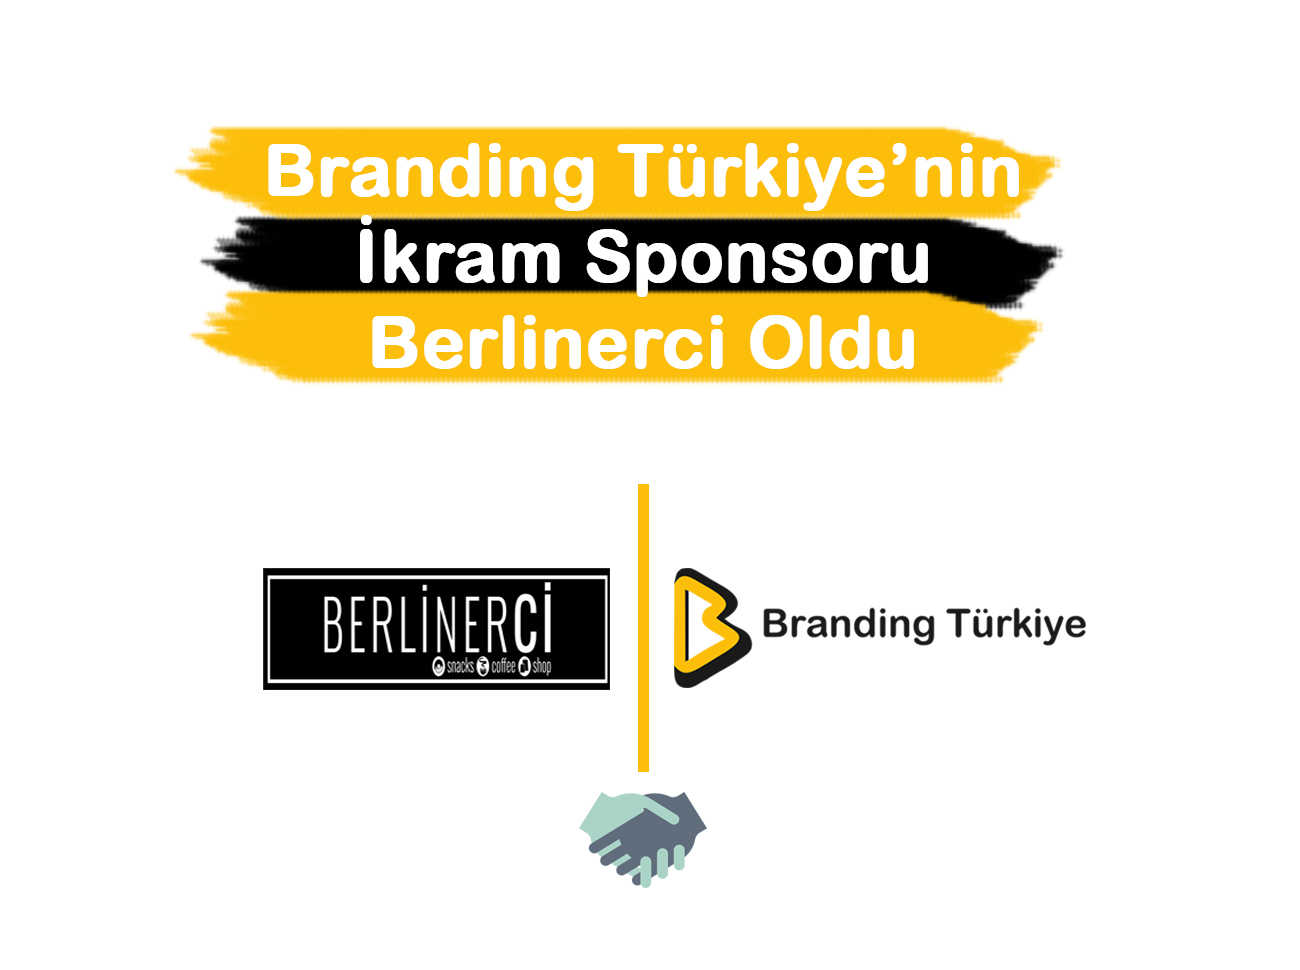 Branding Türkiye nin ikram Sponsoru Berlinerci